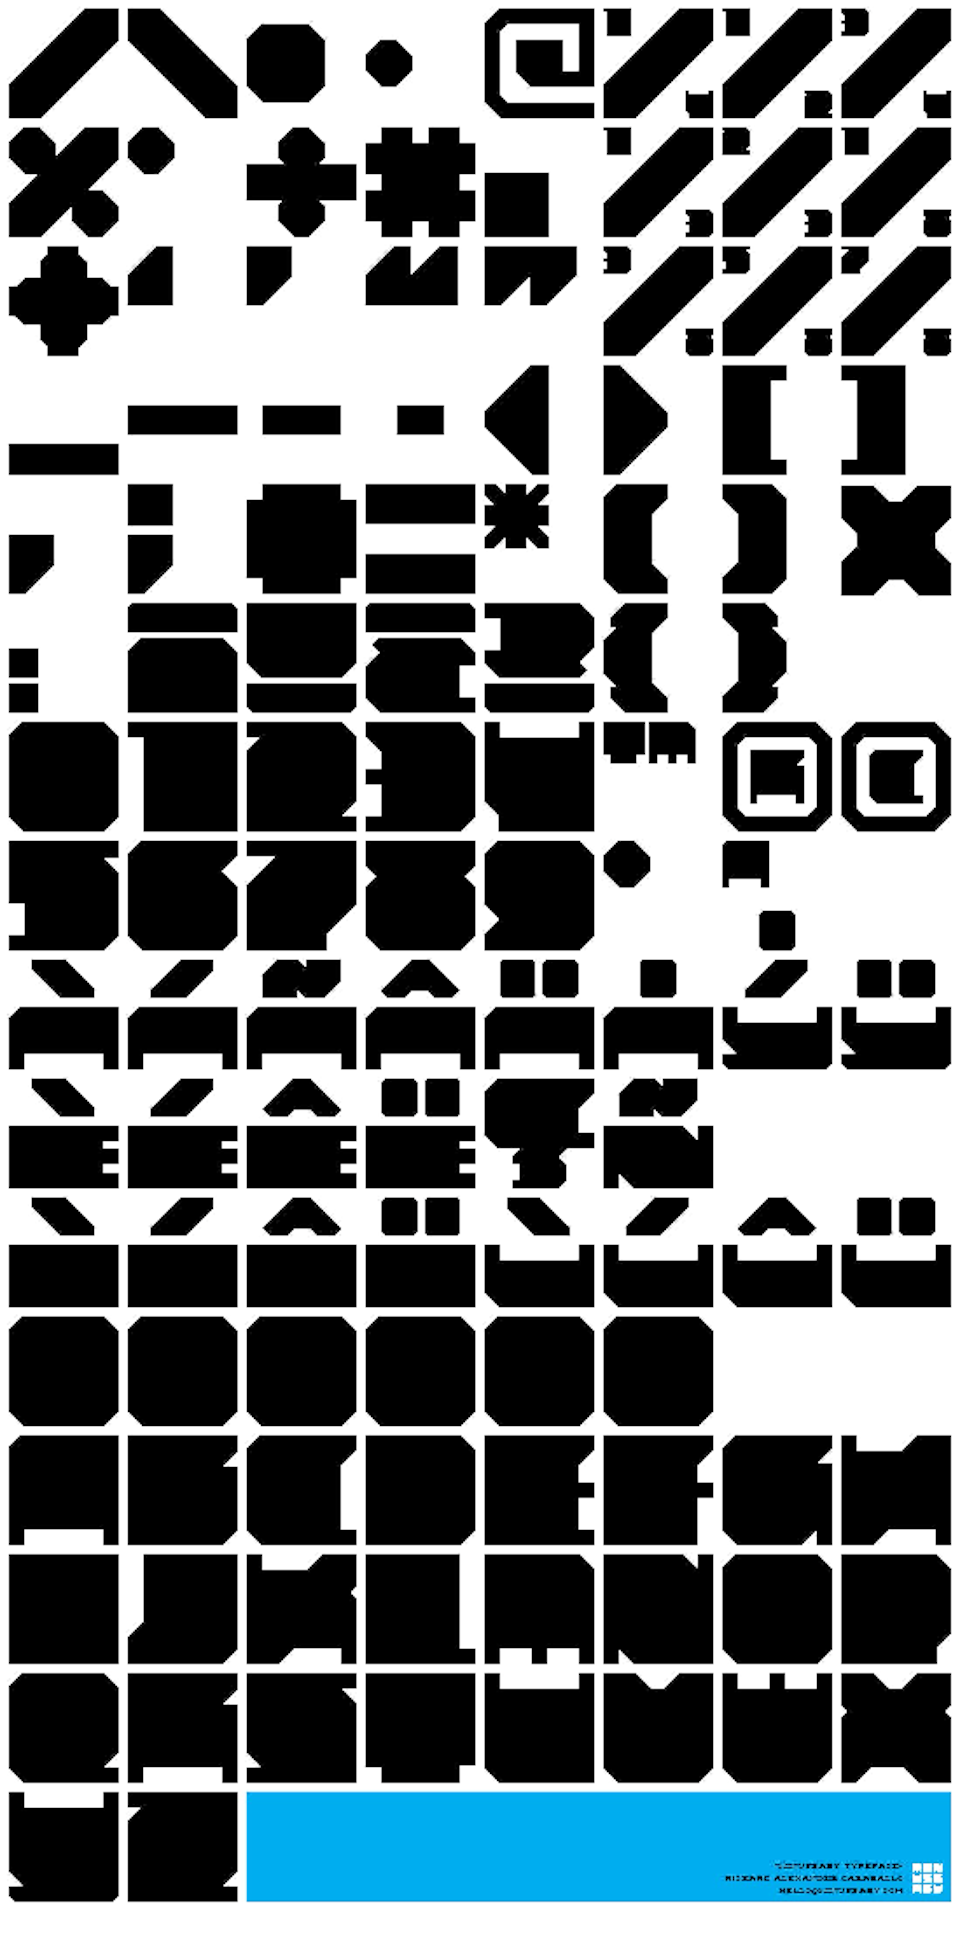 Type, Iconography and Design Language - minusbabytype